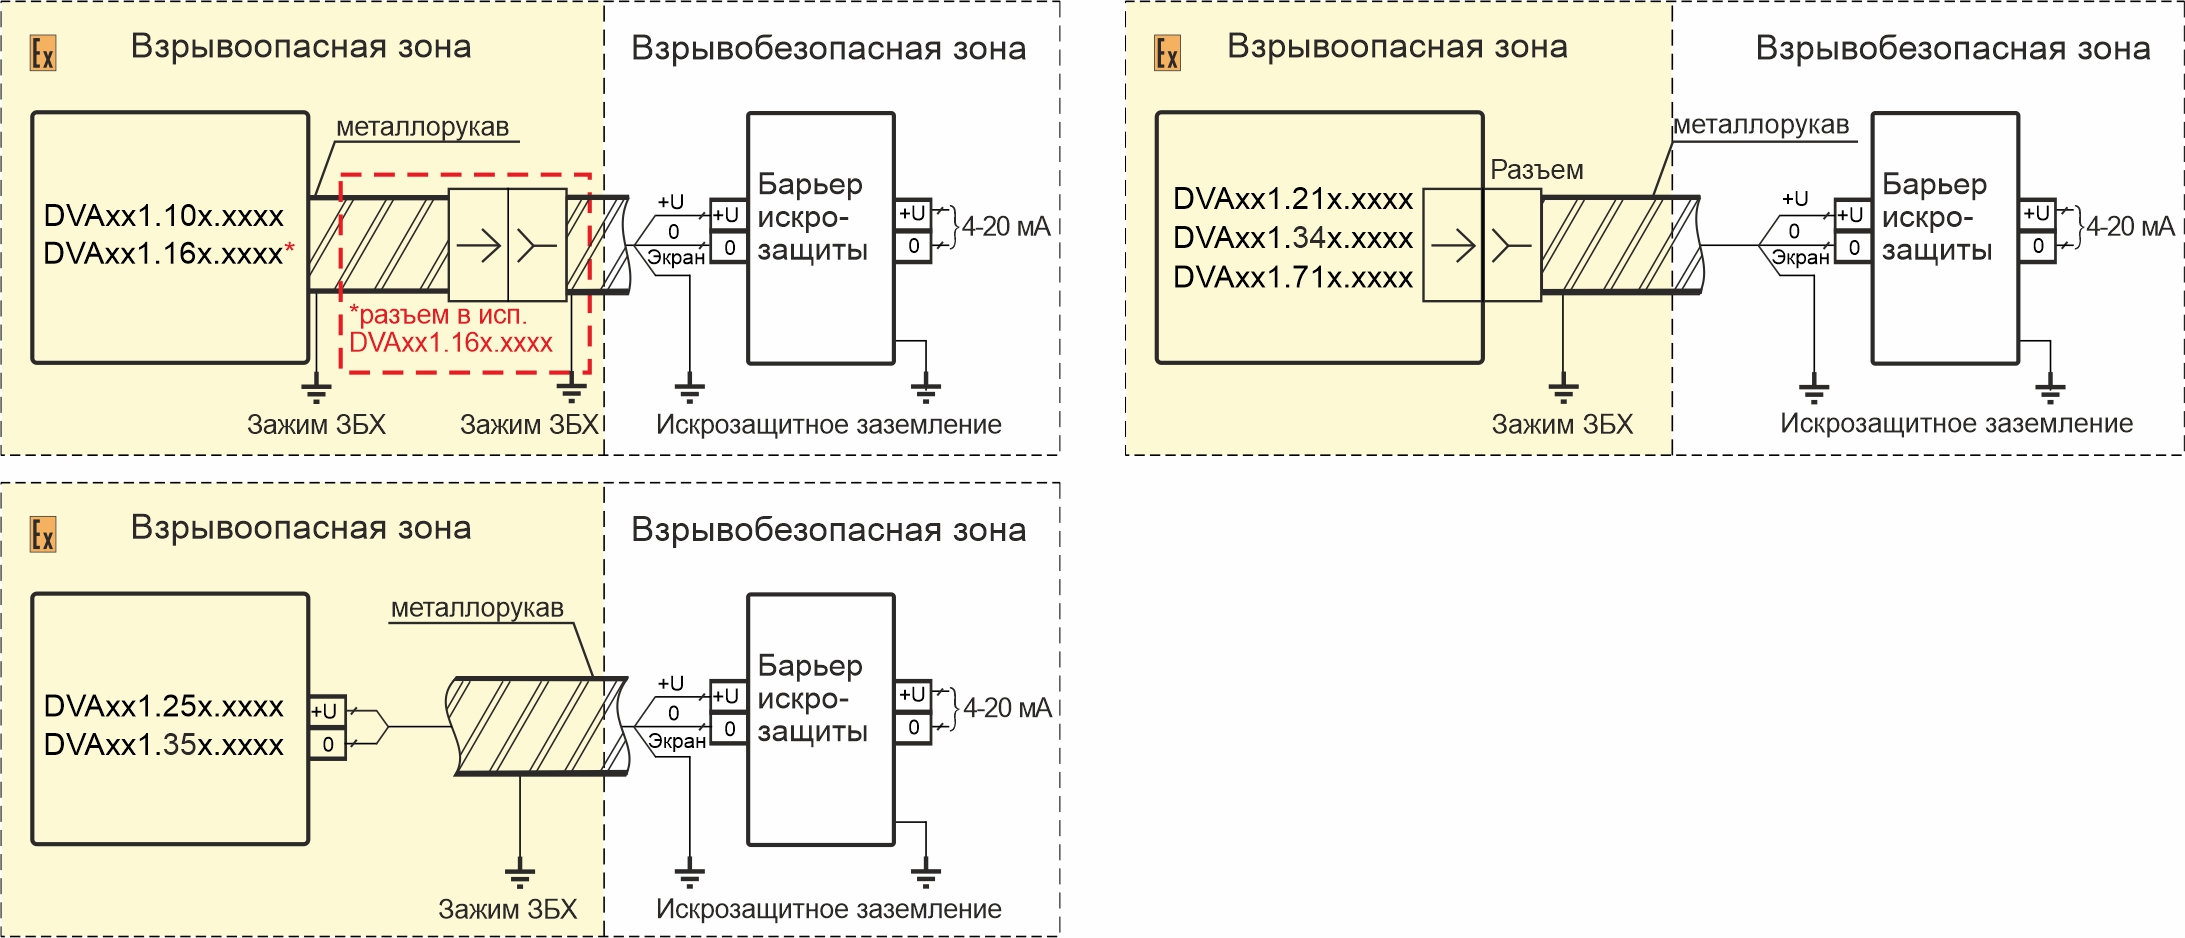 Схемы подключения вибропреобразователей DVA171.XXX